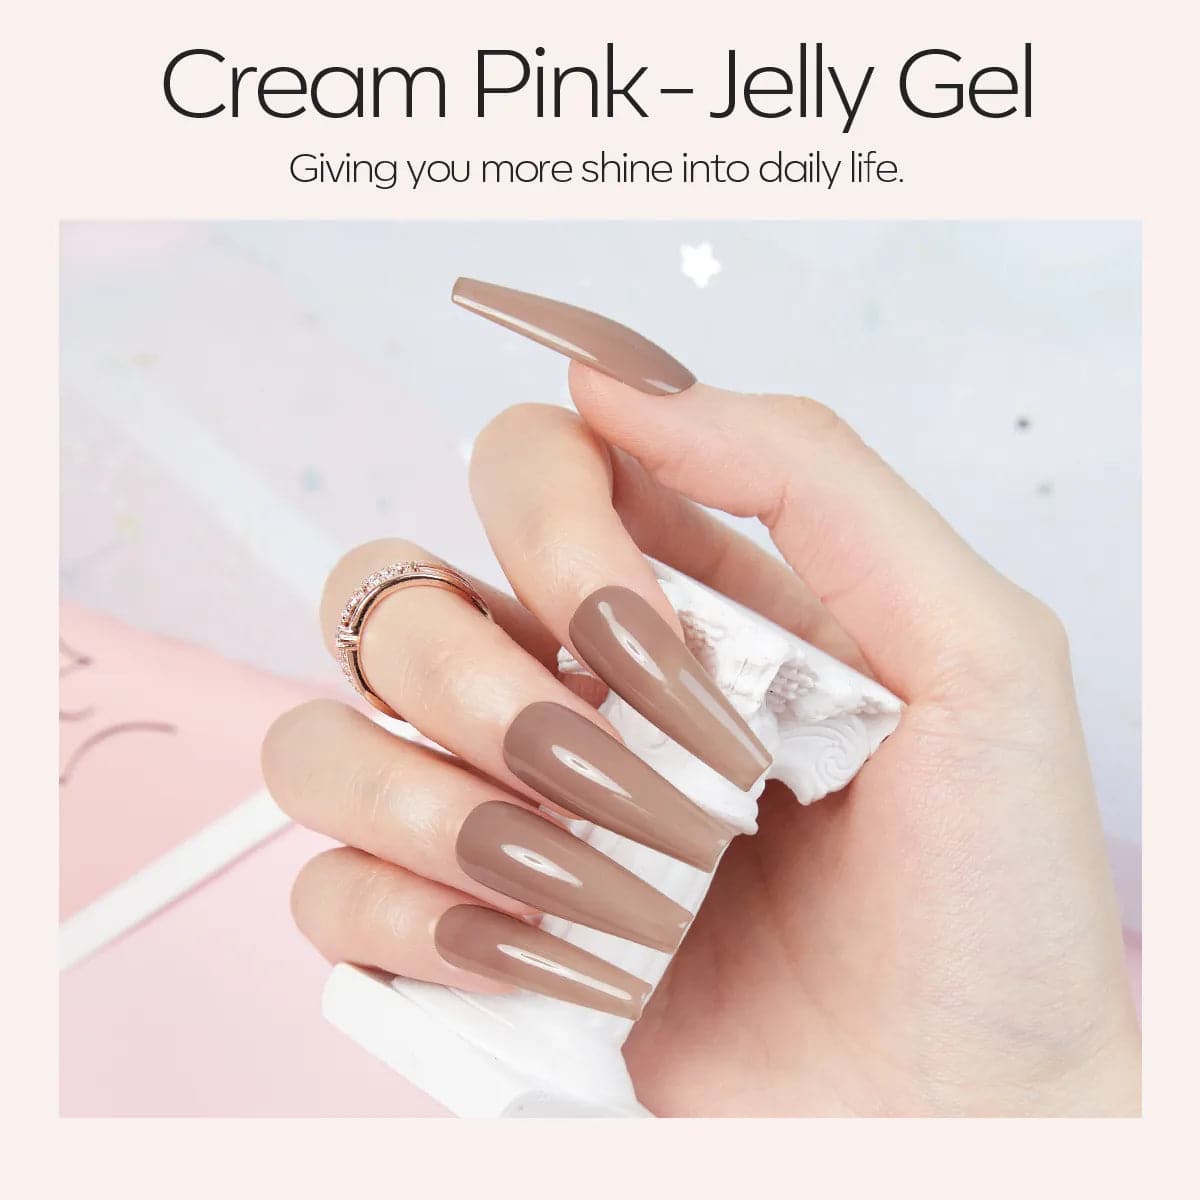 Crème Nude - Single Solid Cream Gel Polish Color Cube